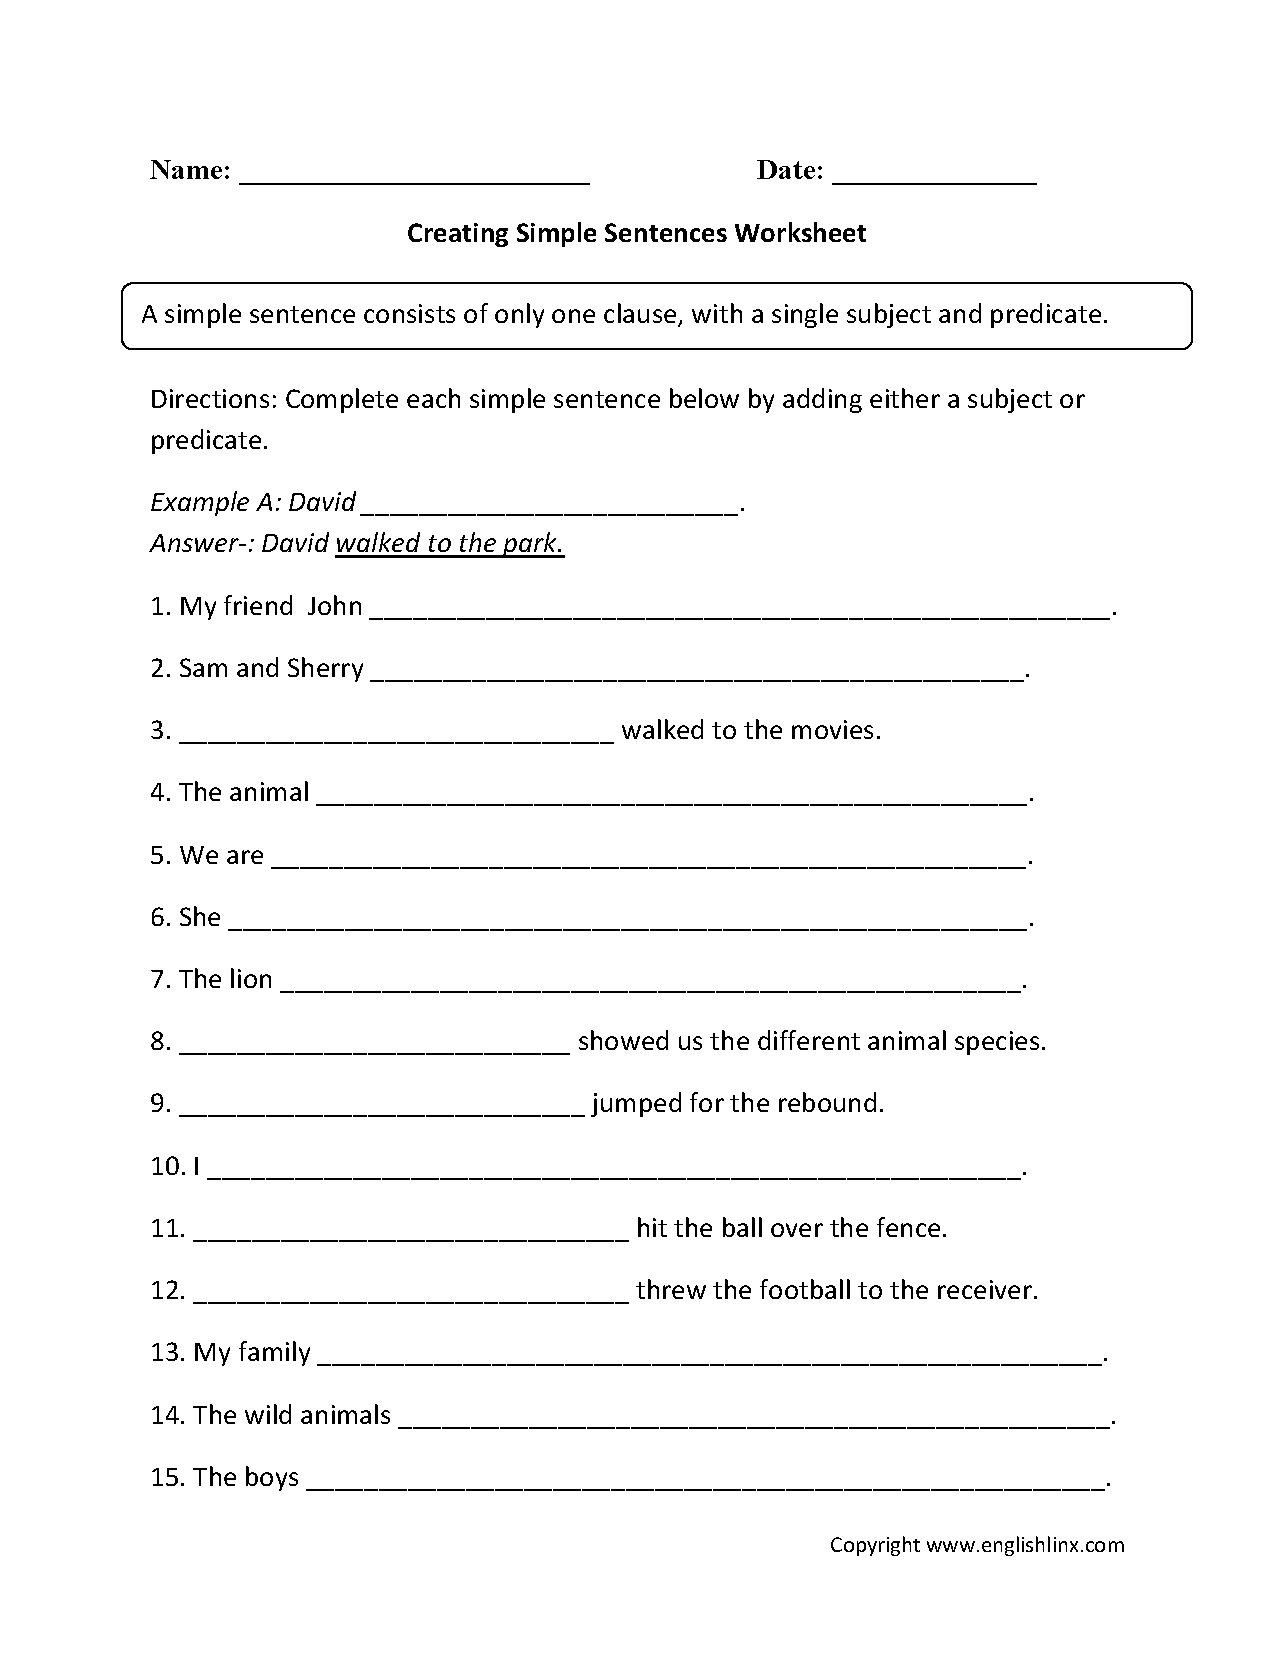 Creating Simple Sentence Worksheet